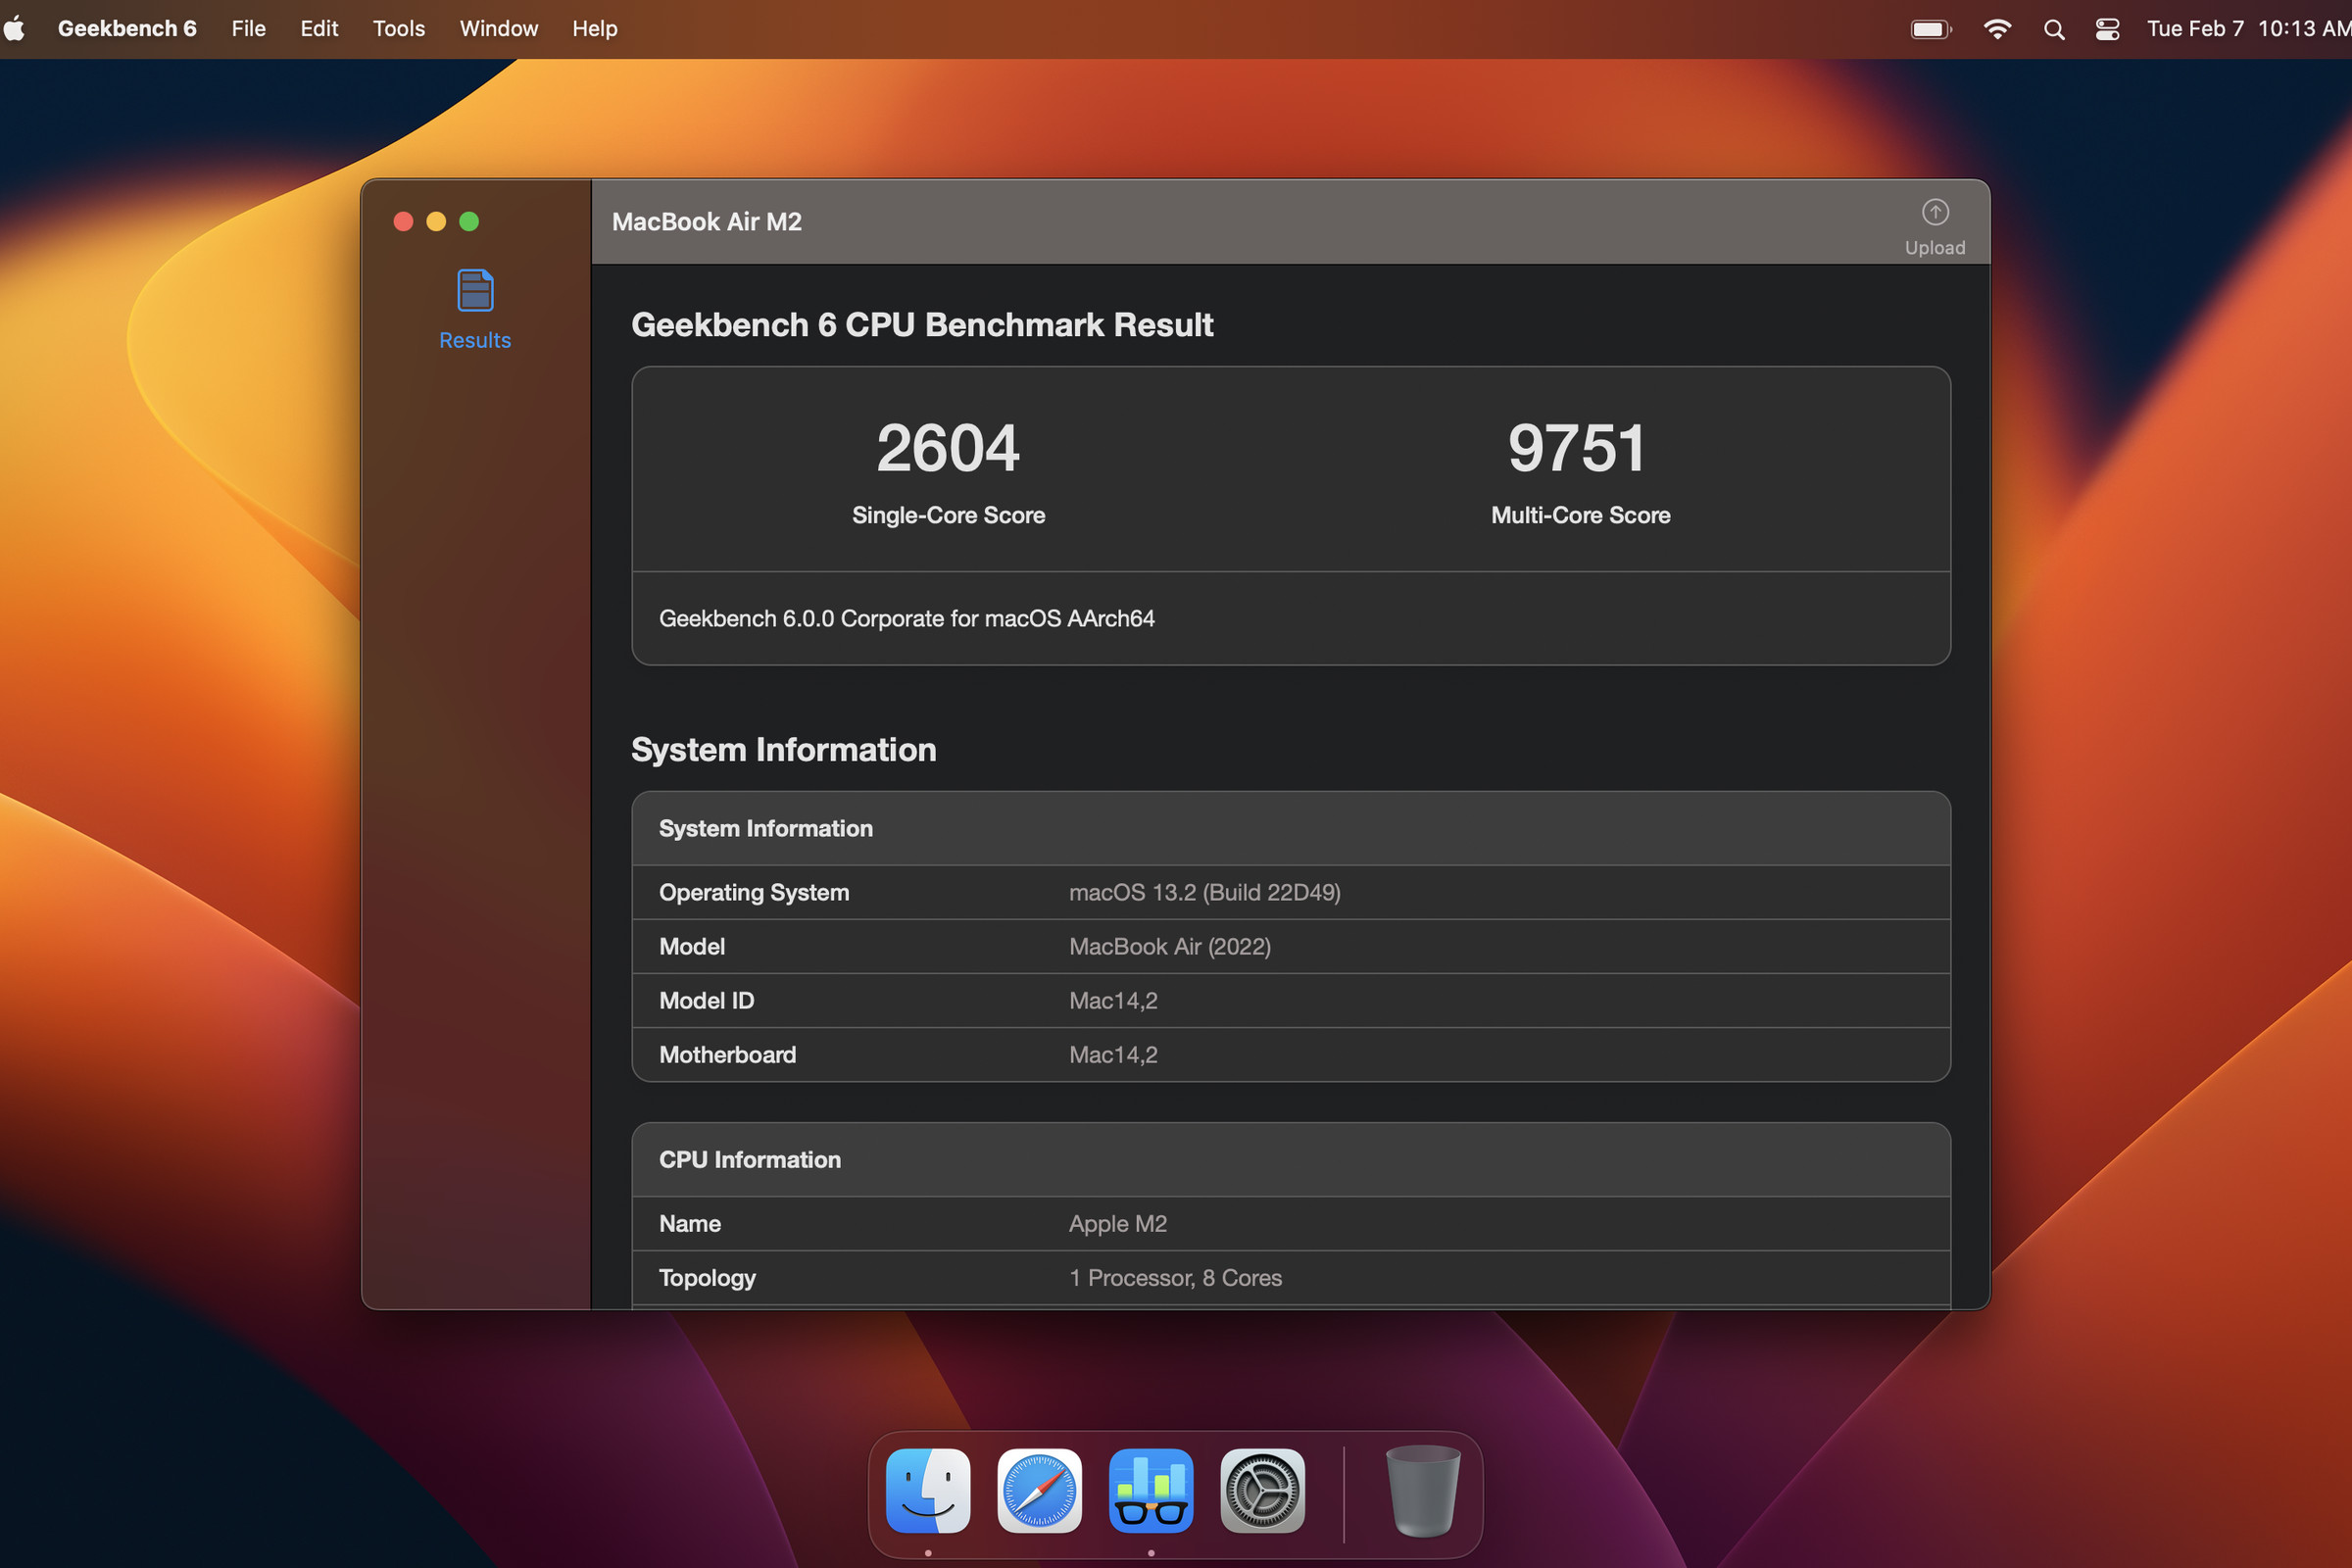 Screenshot of Geekbench 6 running on a Mac.